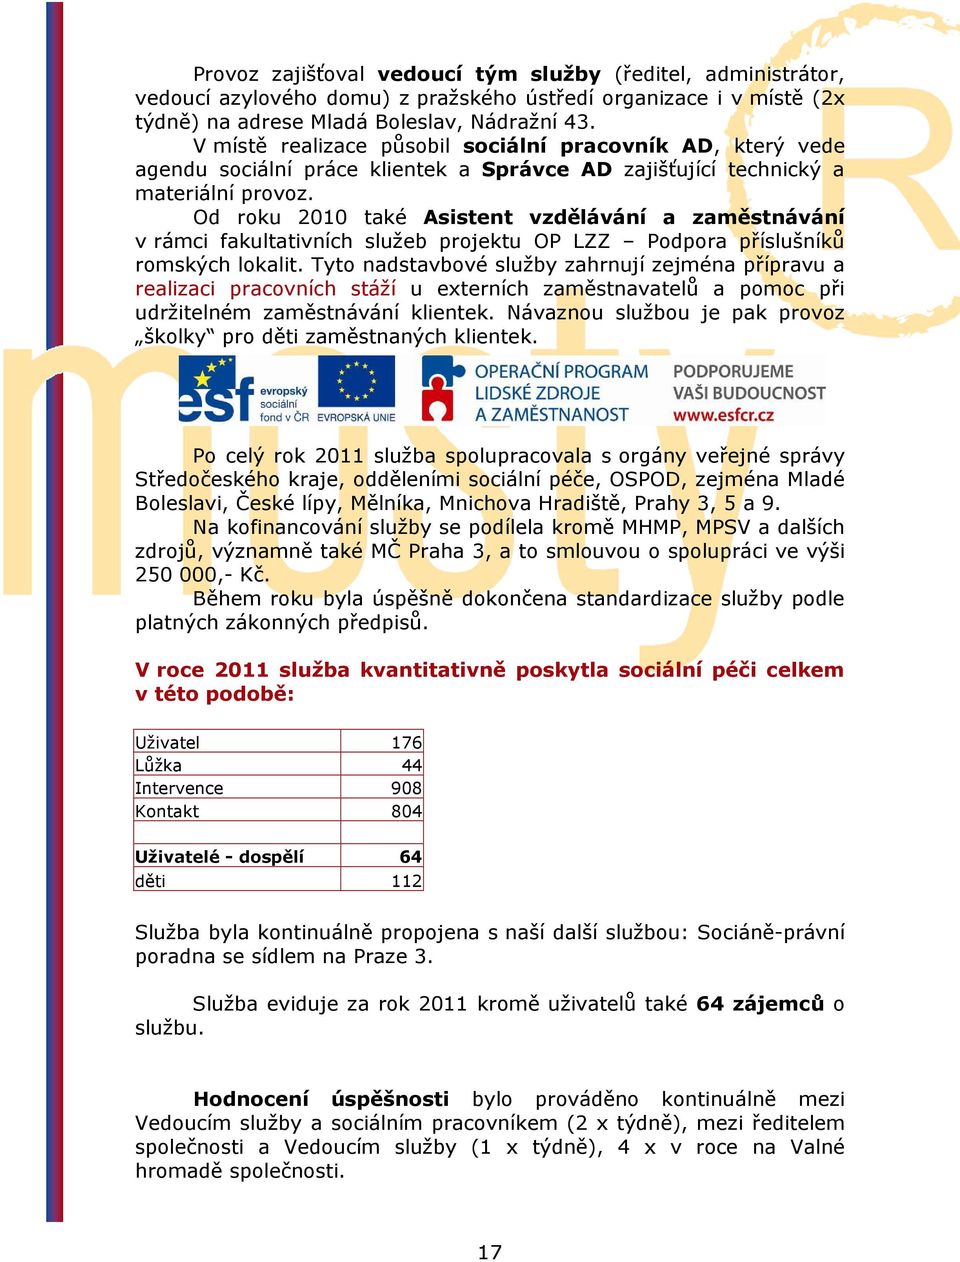 Od roku 2010 také Asistent vzdělávání a zaměstnávání v rámci fakultativních služeb projektu OP LZZ Podpora příslušníků romských lokalit.